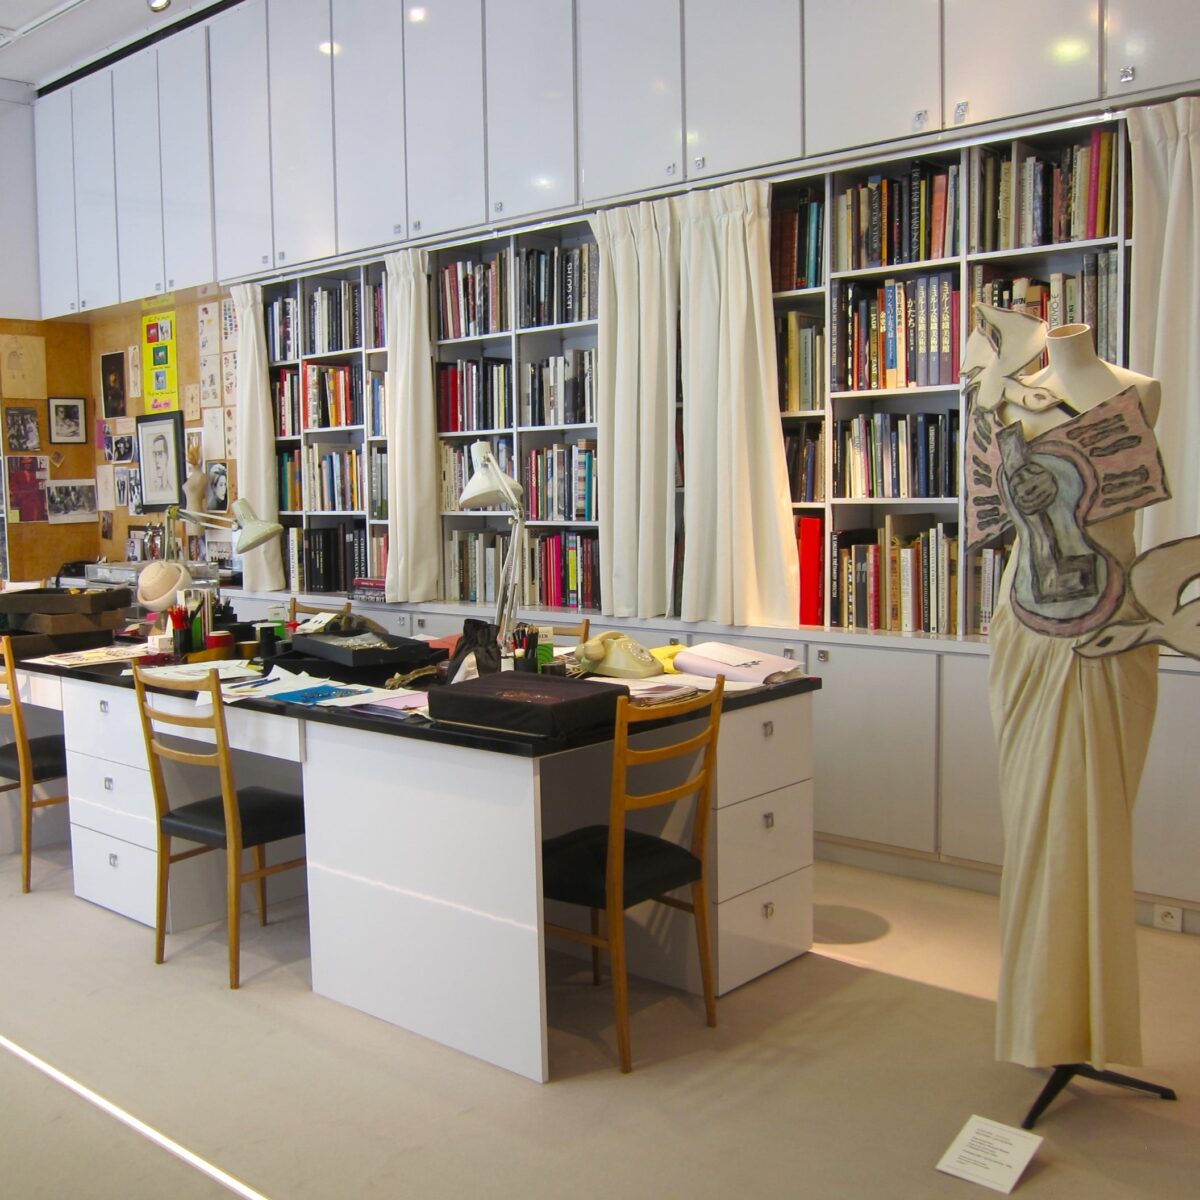 Musée Yves Saint Laurent in Parijs - atelier van de grootmeester